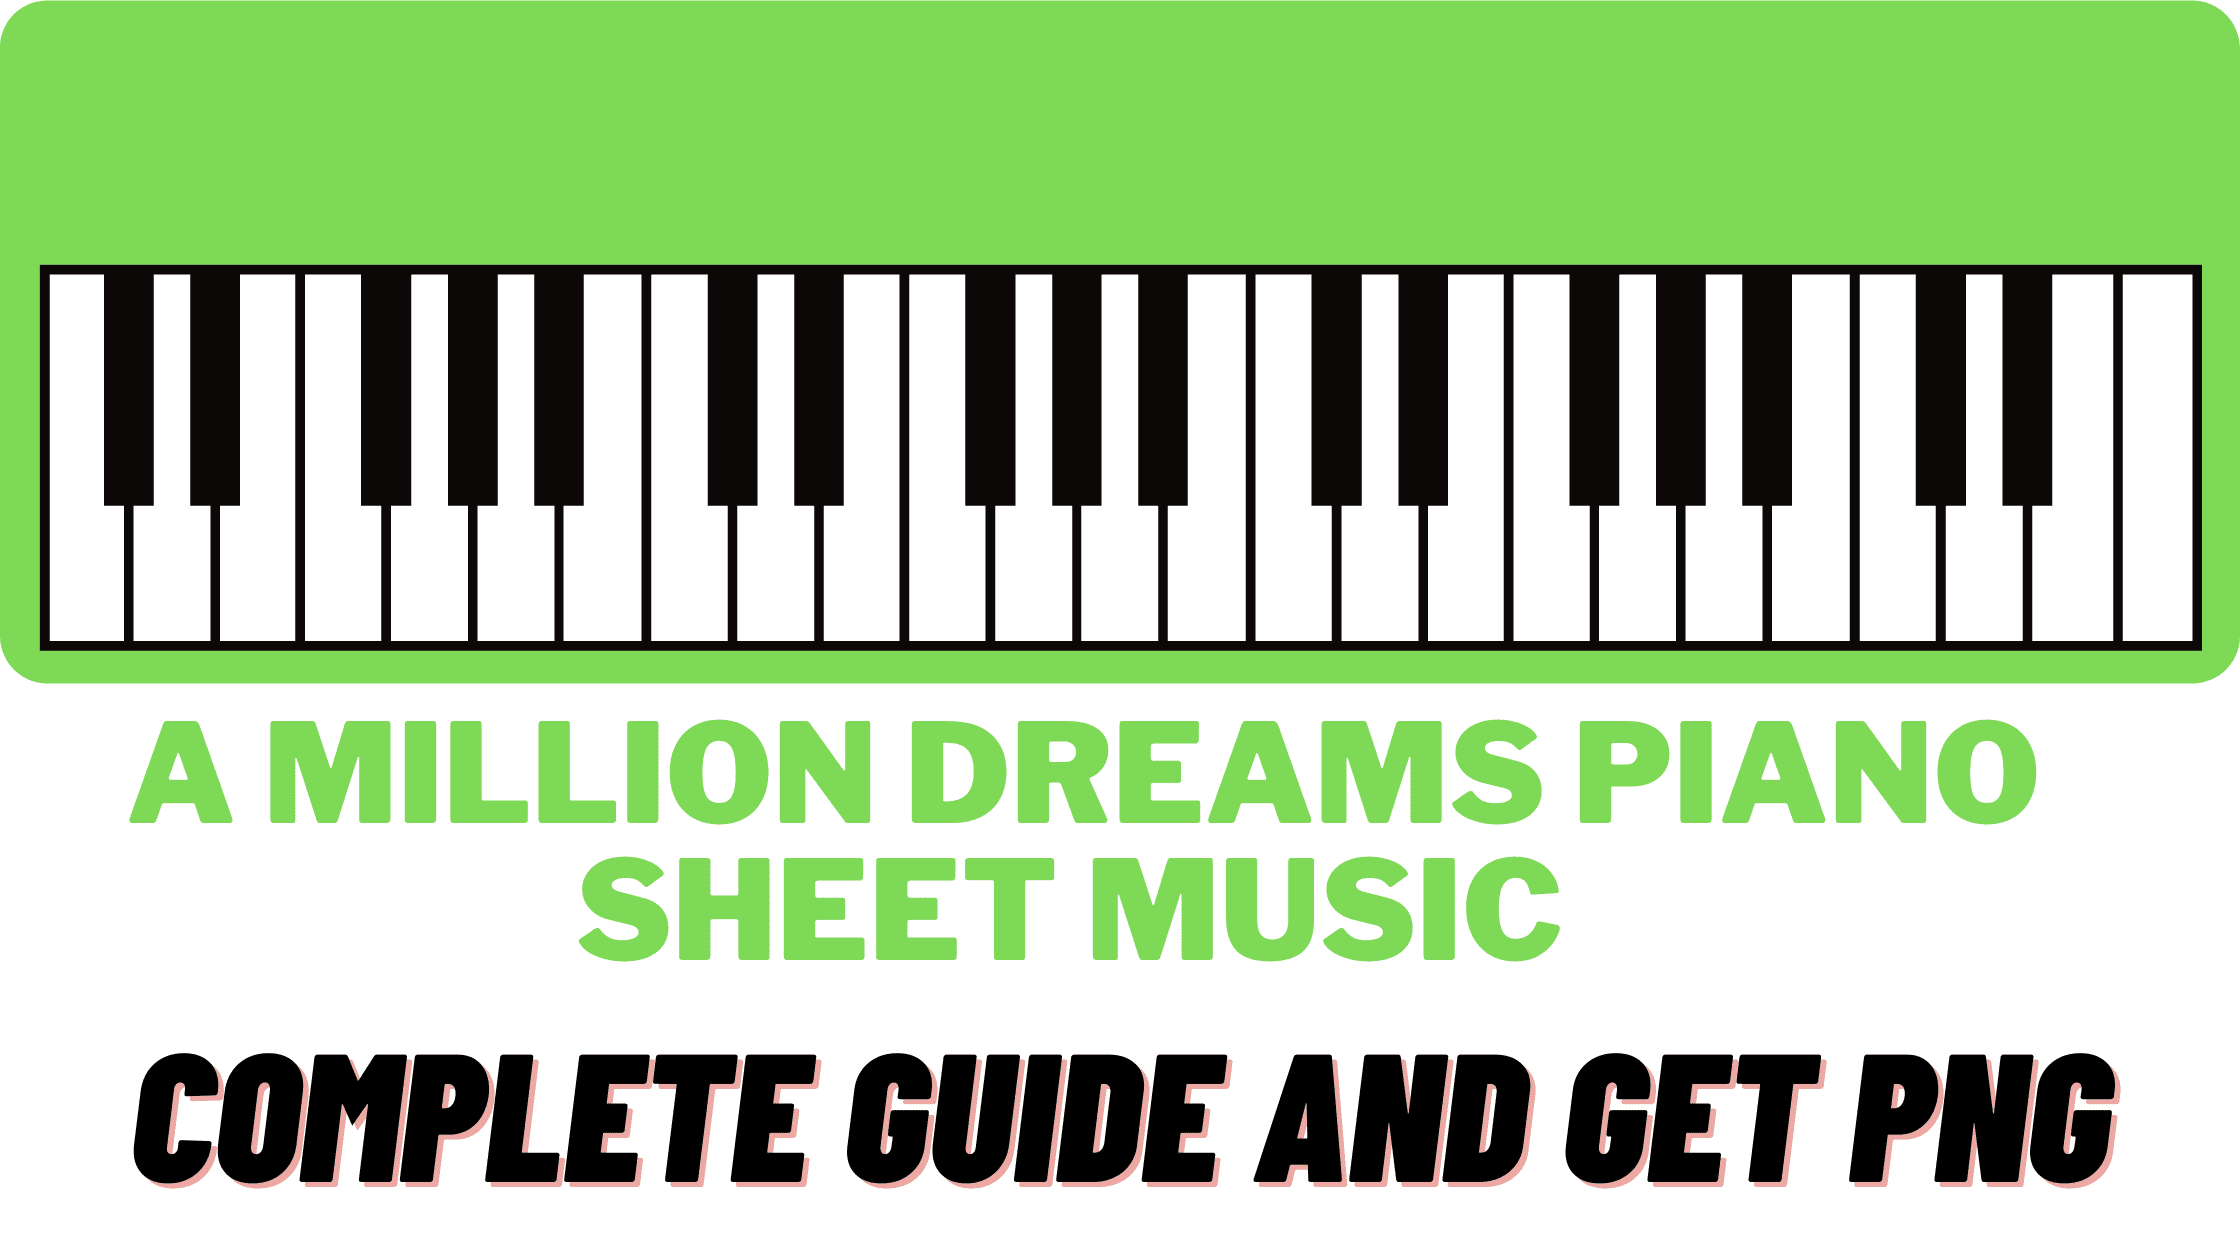 Piano Music Sheet